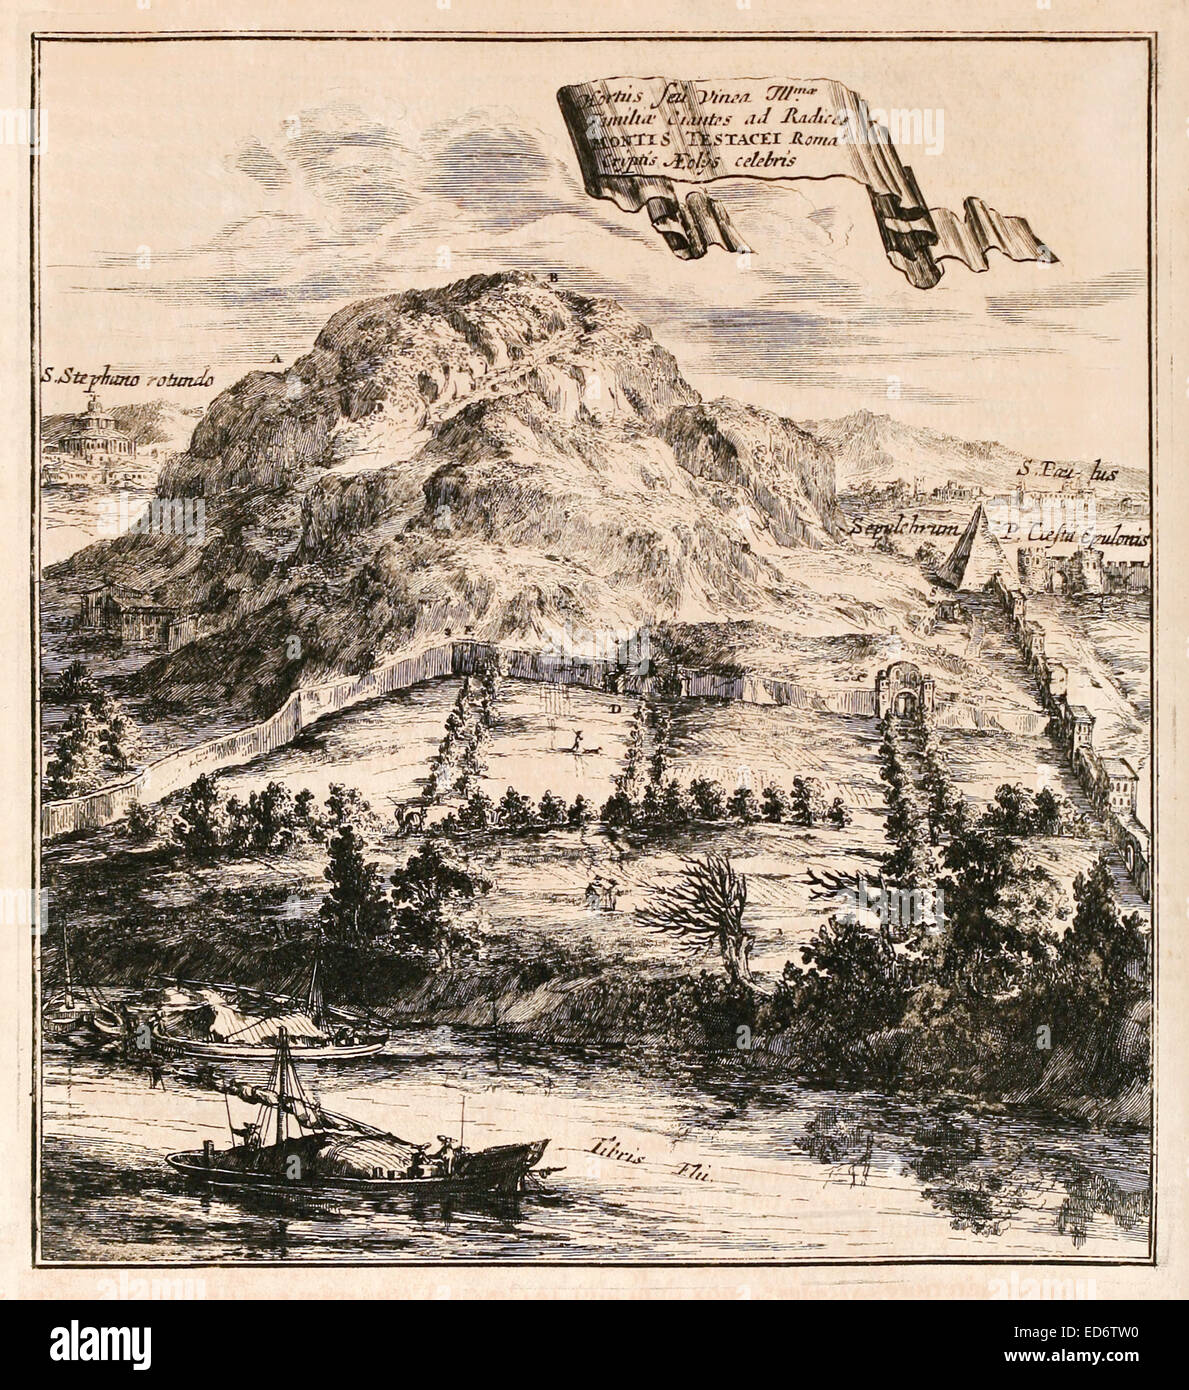 17ème siècle illustration de Monte Testaccio, une colline artificielle à Rome, Italie. et la Pyramide de Cestius. Voir la description pour plus d'informations. Banque D'Images